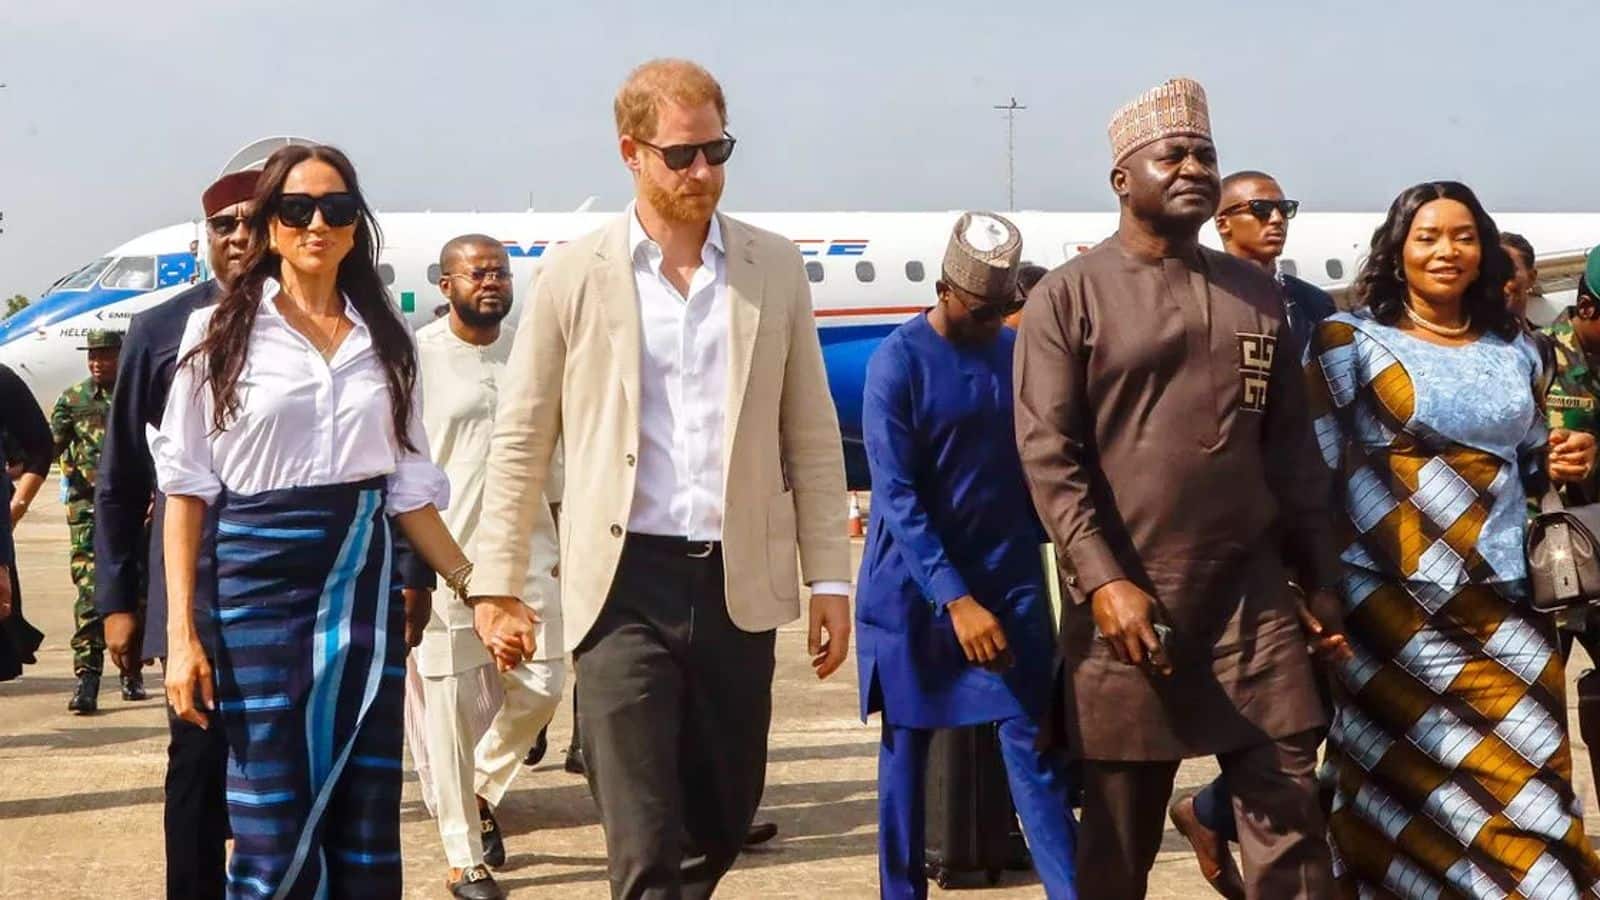 Harry, Meghan flown free across Nigeria by fugitive airline boss 